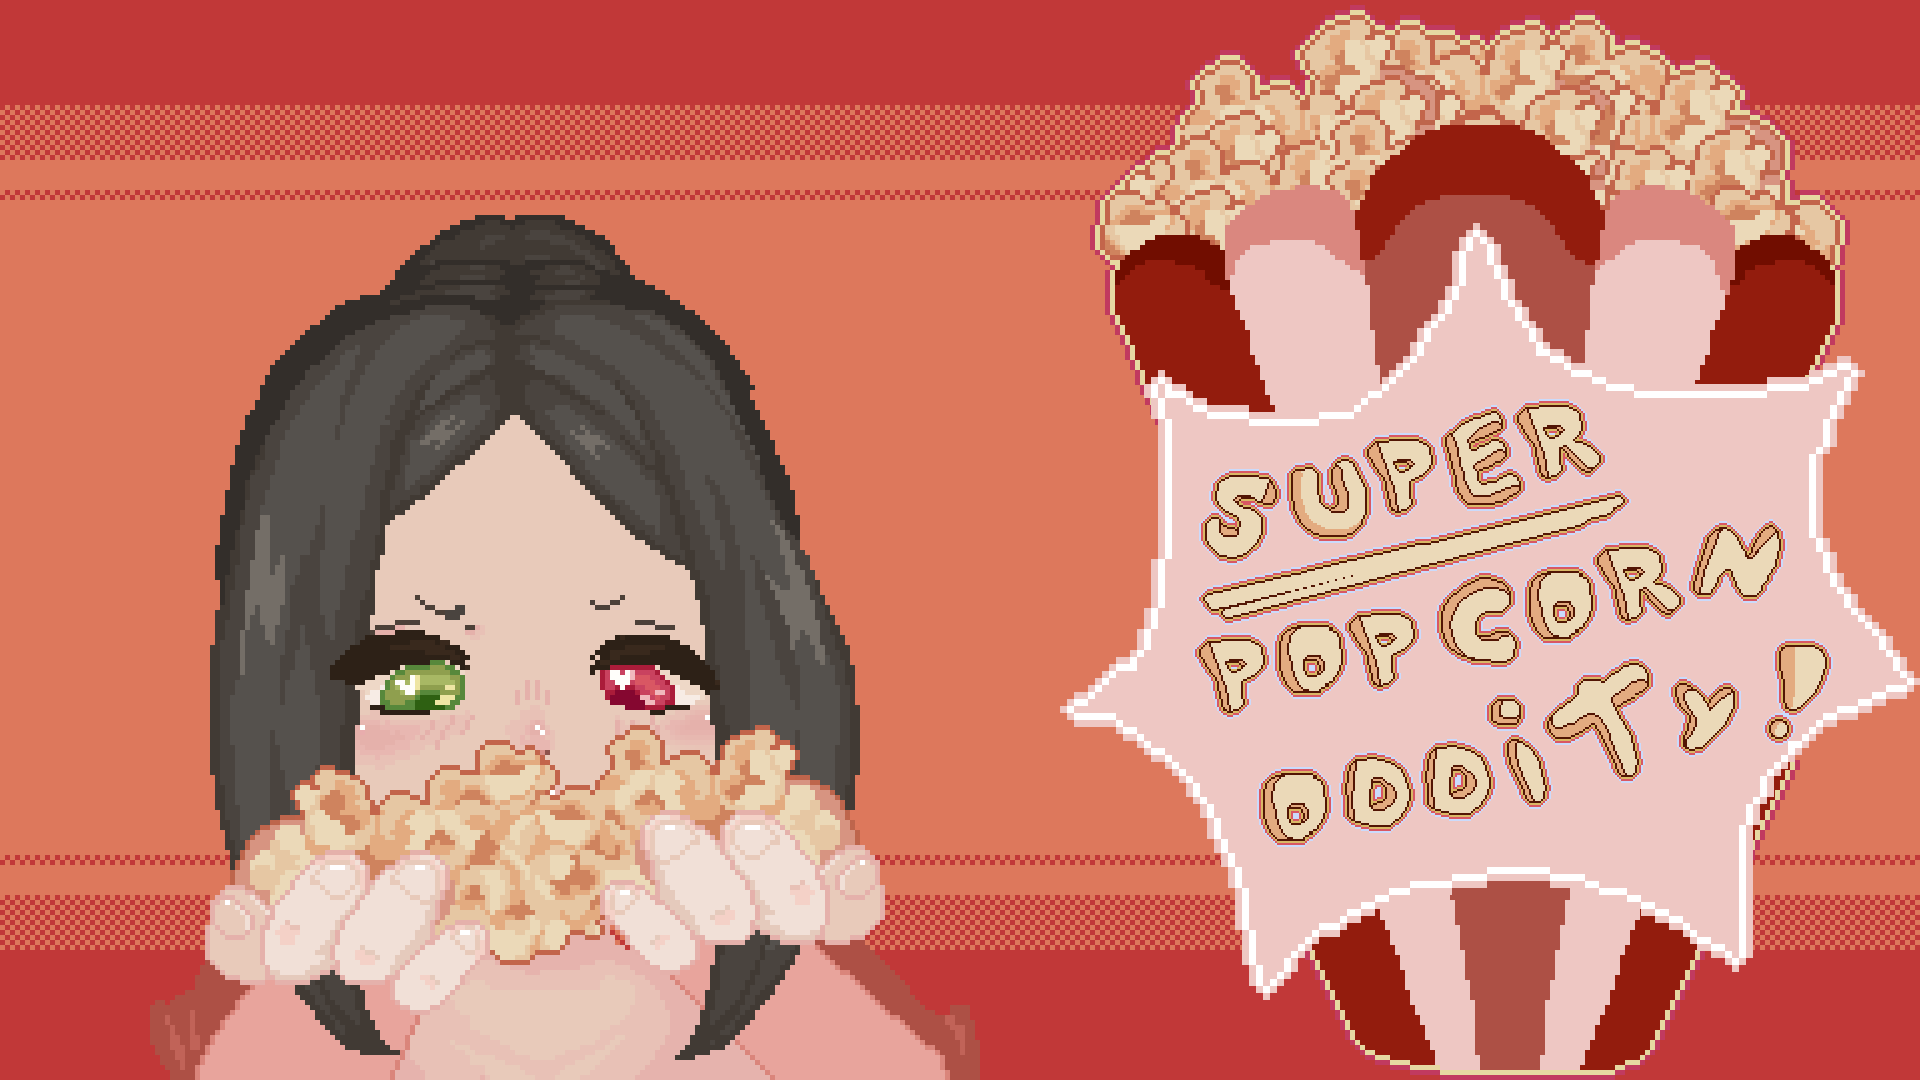 SUPER Popcorn Oddity!